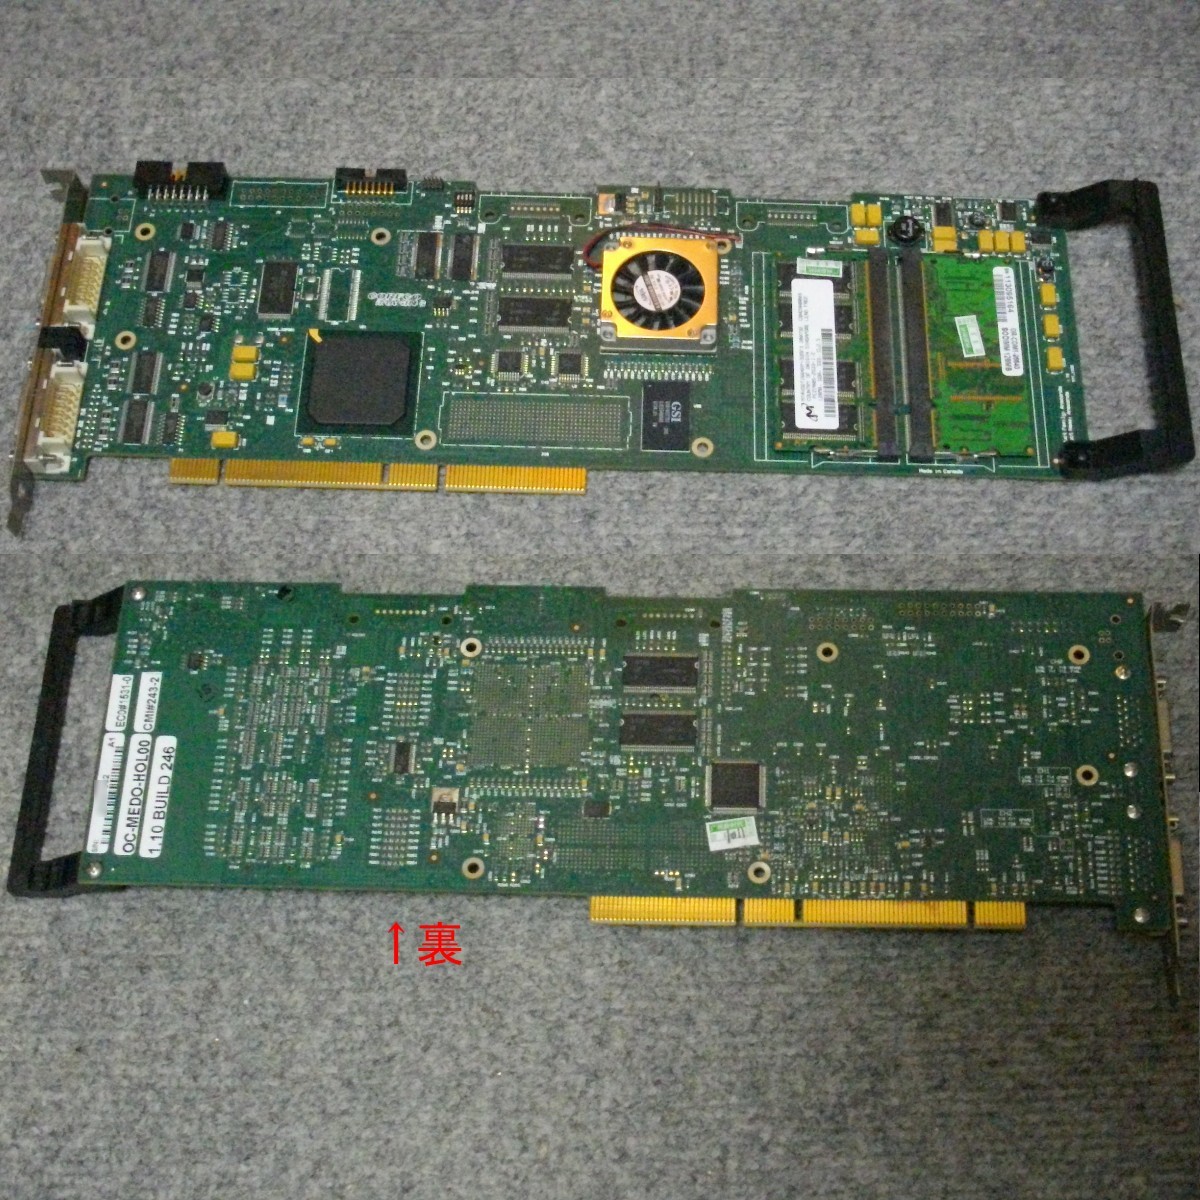 JUNK即納 デバイス認識まで確認 産業用PCI-Xボード CORECO IMAGING OC-MEDO-HOL00 CMI#243-2 1.10 BUILD 246 PCI-X 2